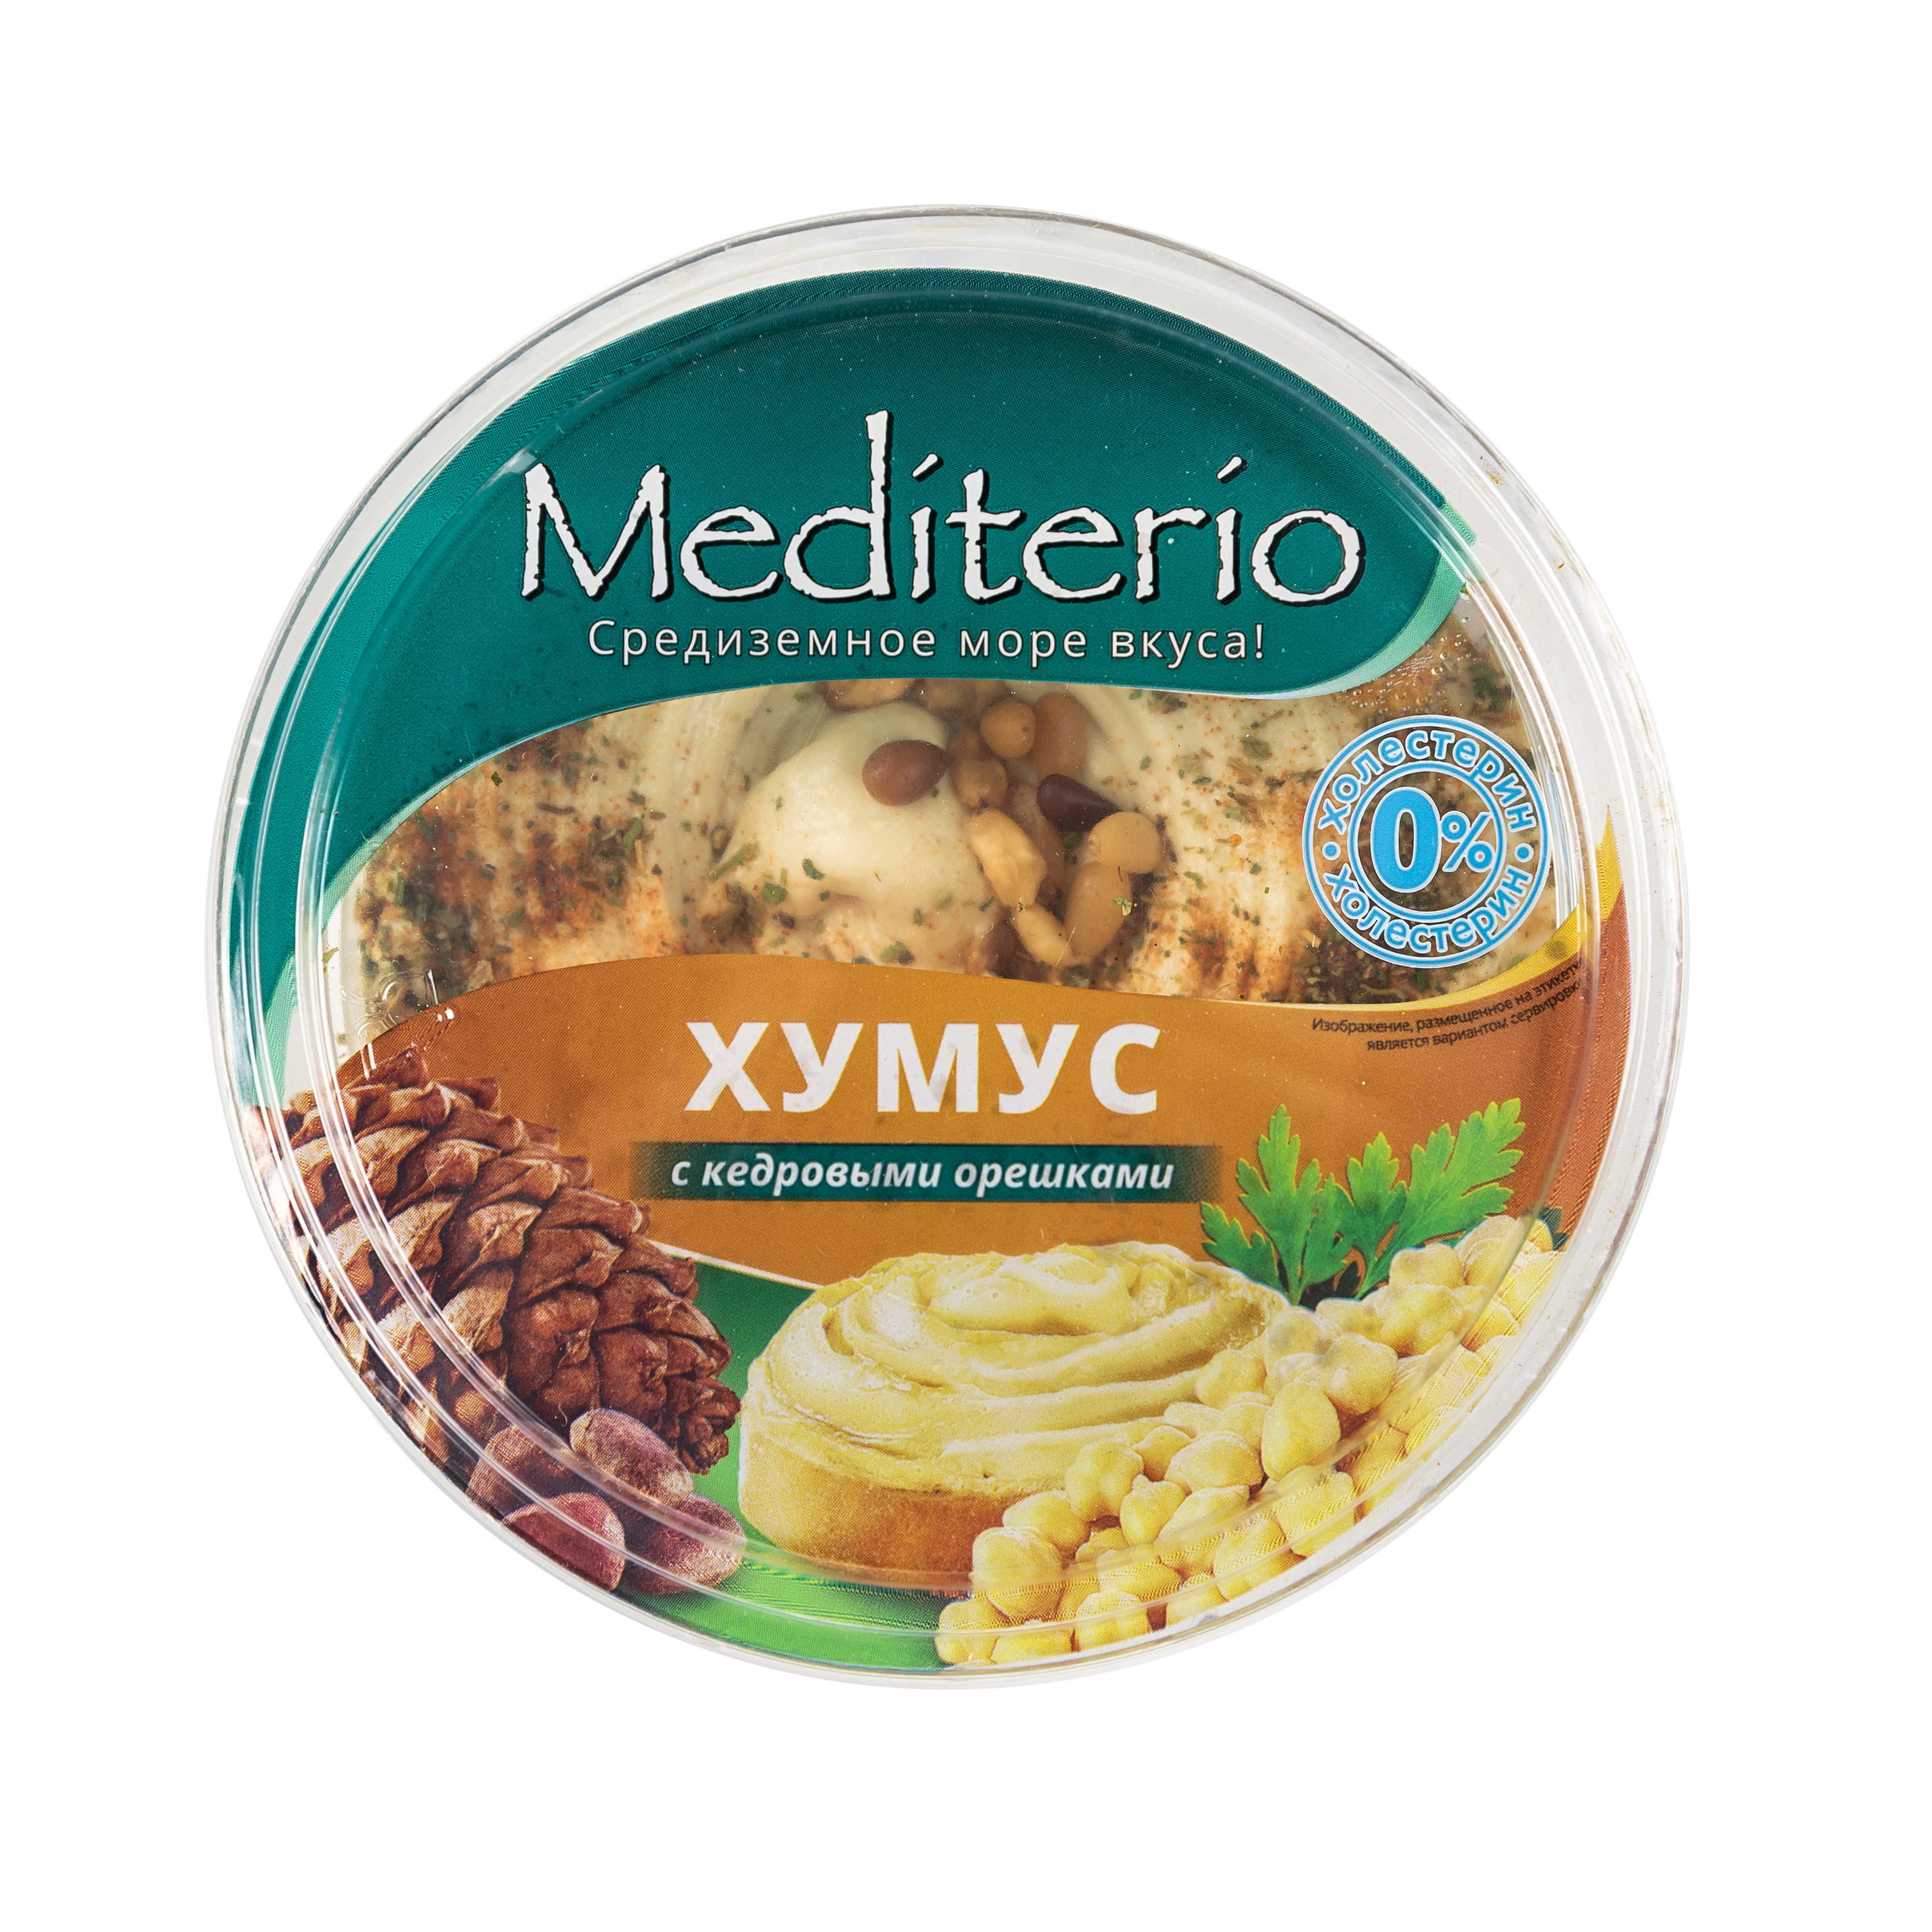 Хумус с кедровыми орешками "Mediterio"